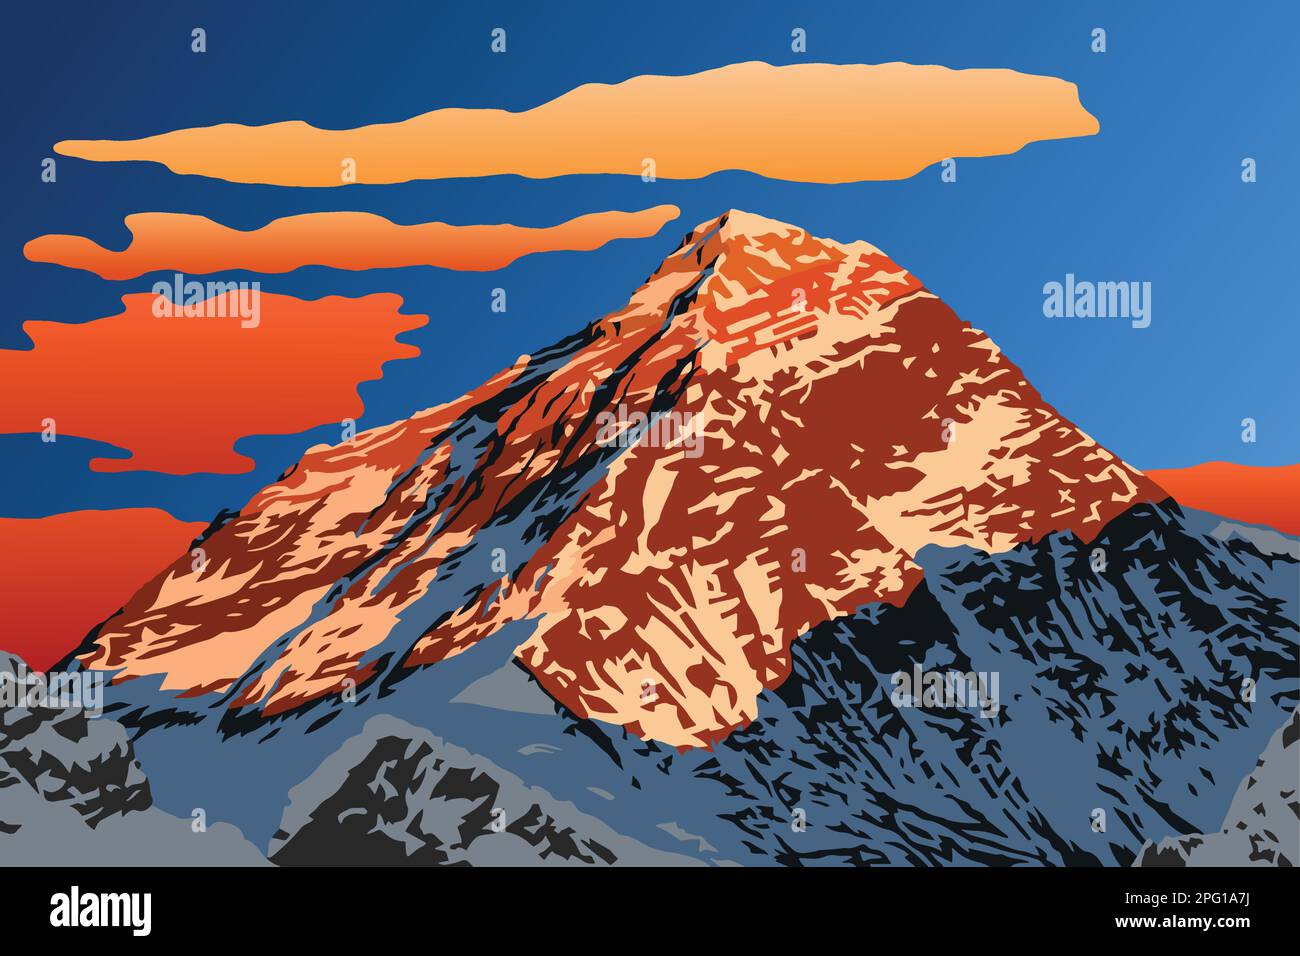 Abendliche Bergspitze des Mount Everest Vektorlogo, Nepal Himalaya Berge, Mount Everest vom Gokyo Ri Gipfel aus gesehen Stock Vektor